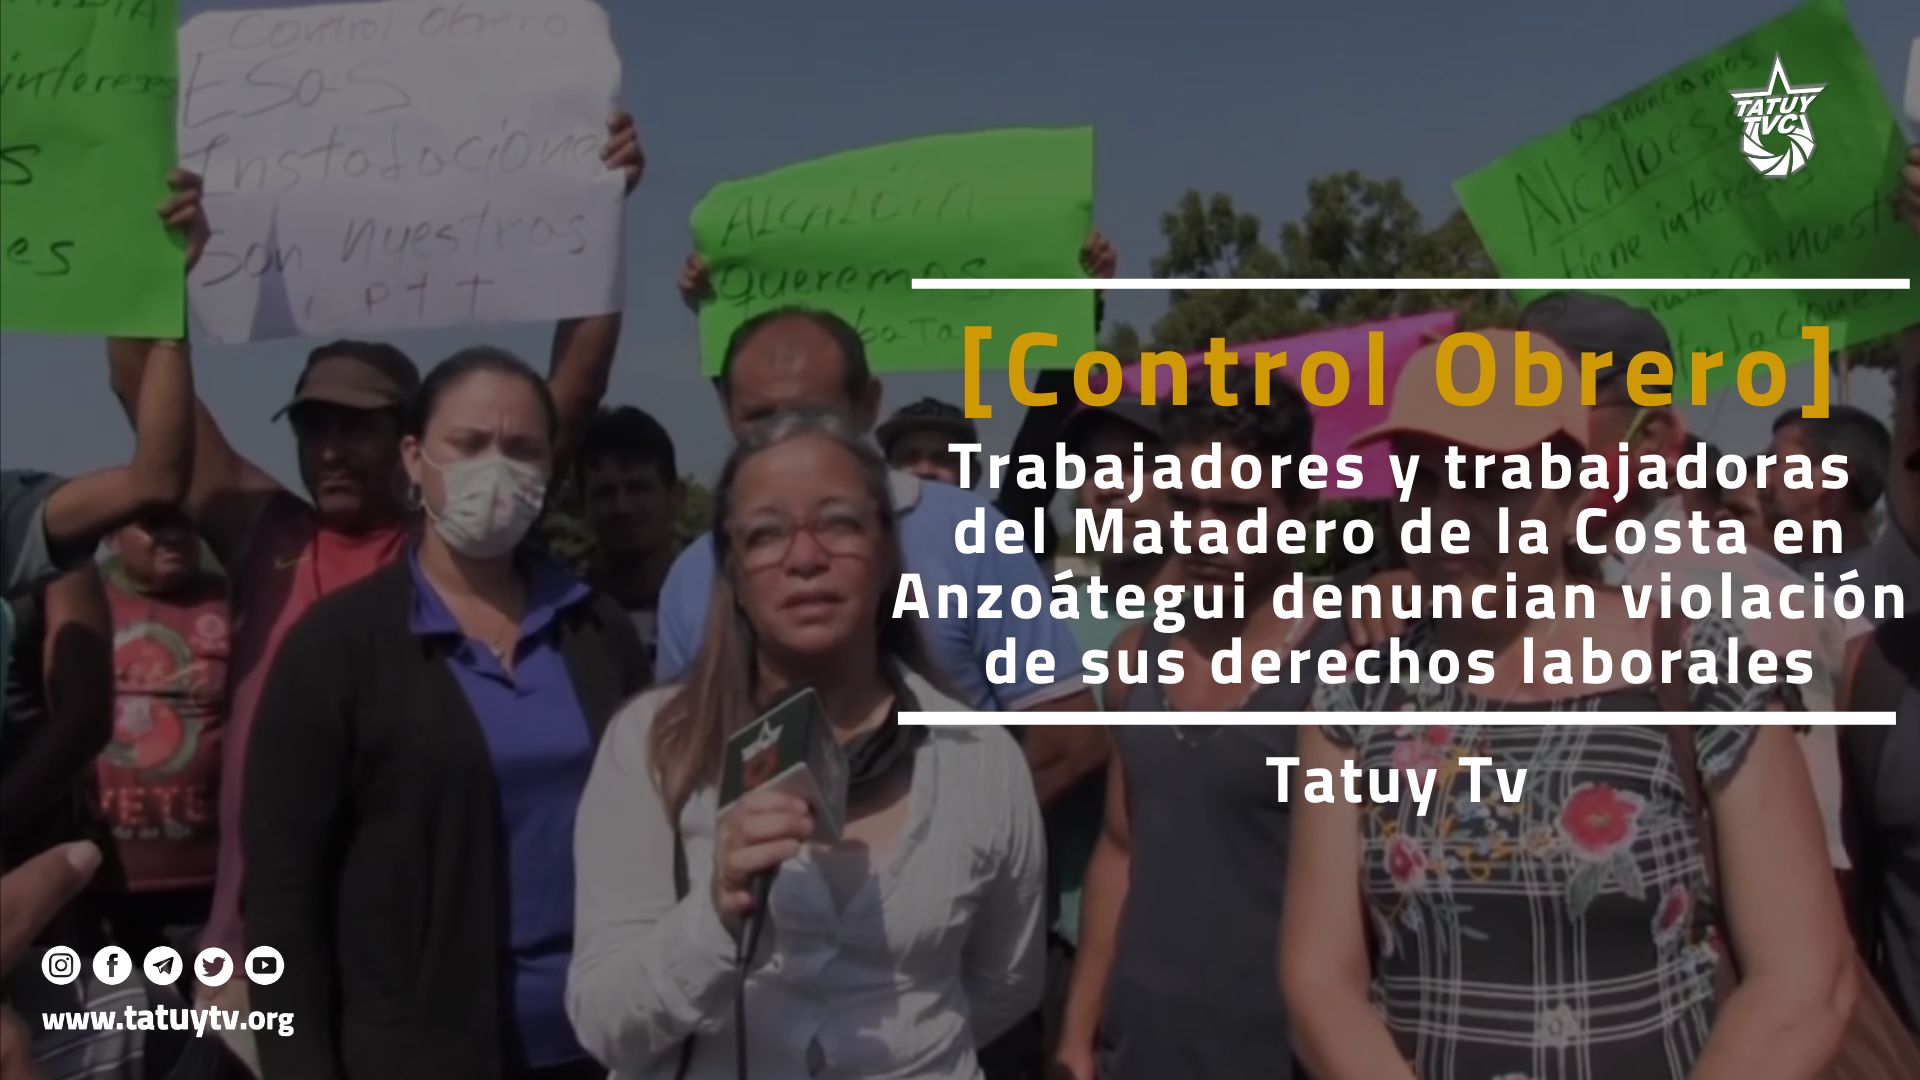 [LUCHA OBRERA] Trabajadores/as del Matadero de la Costa en Anzoátegui denuncian violación de derechos laborales